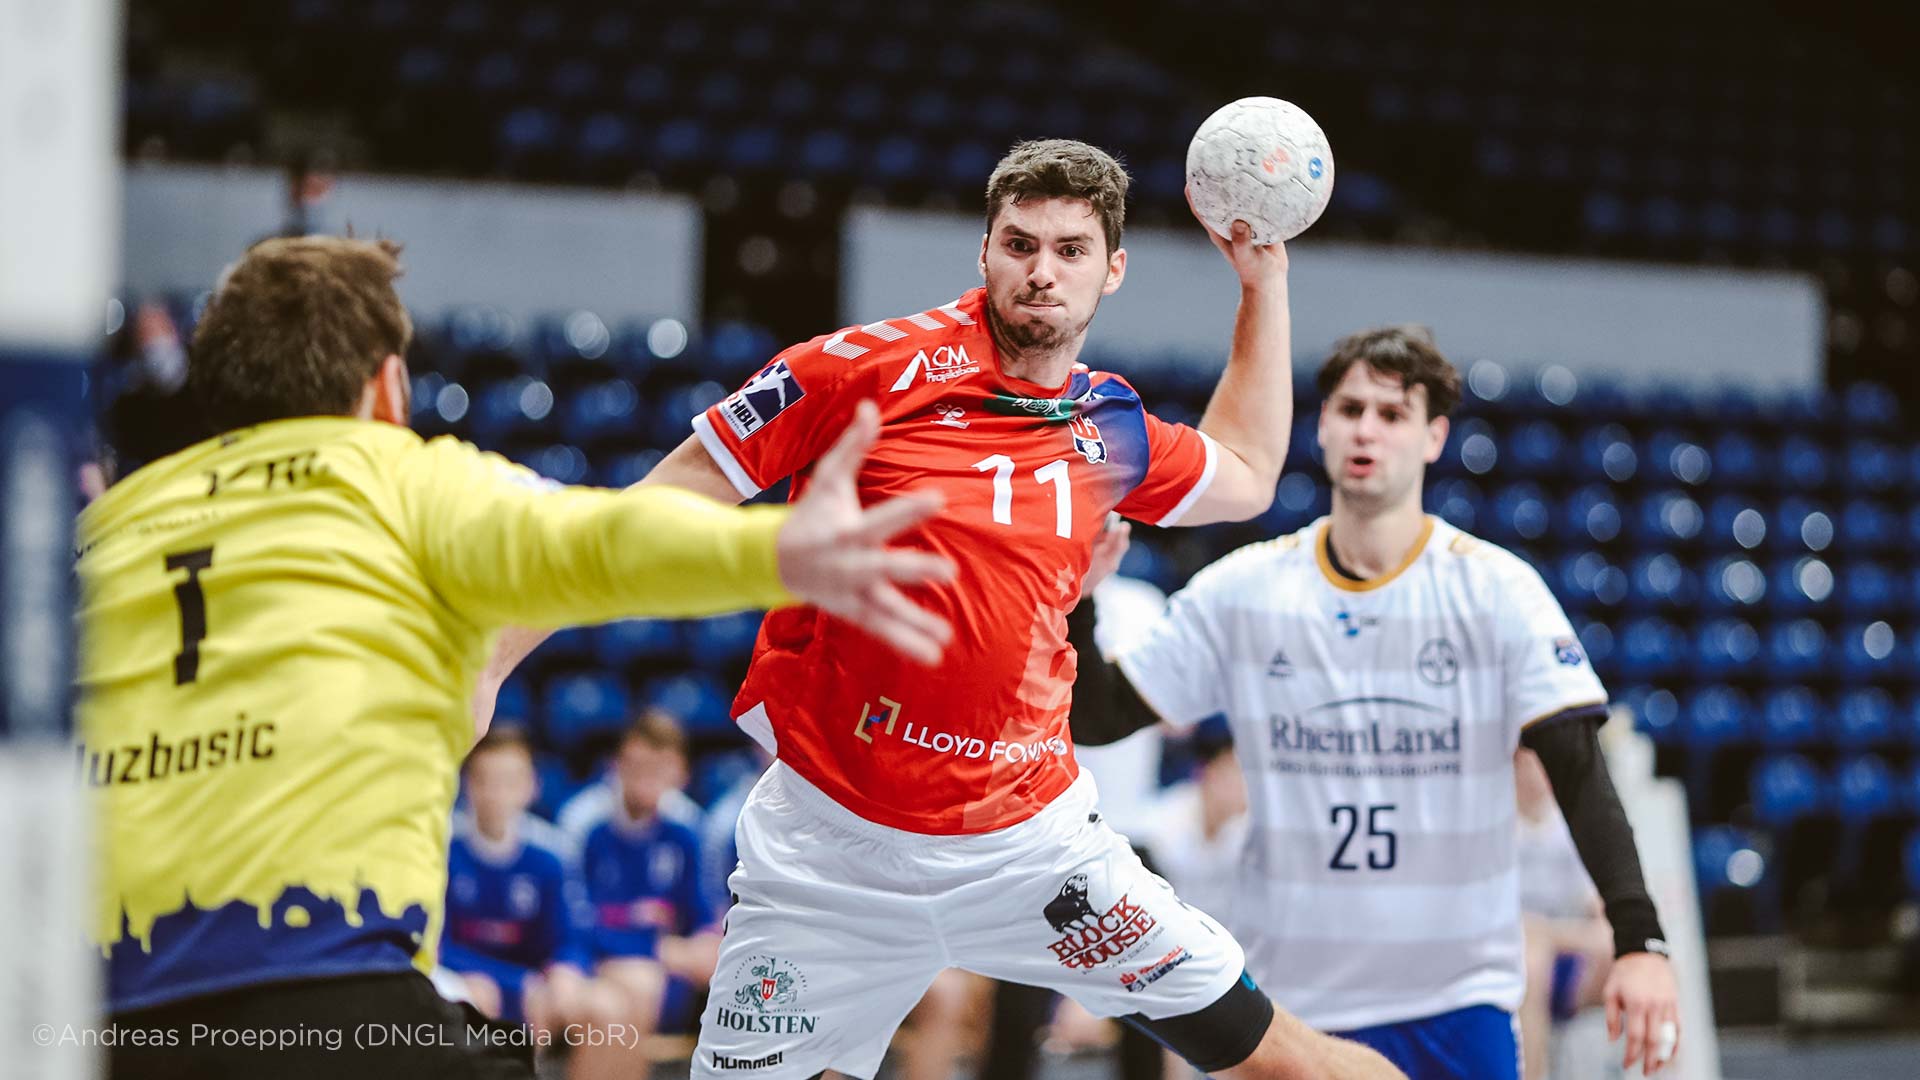 Holsten sponsert Handballspieler des Handball SV